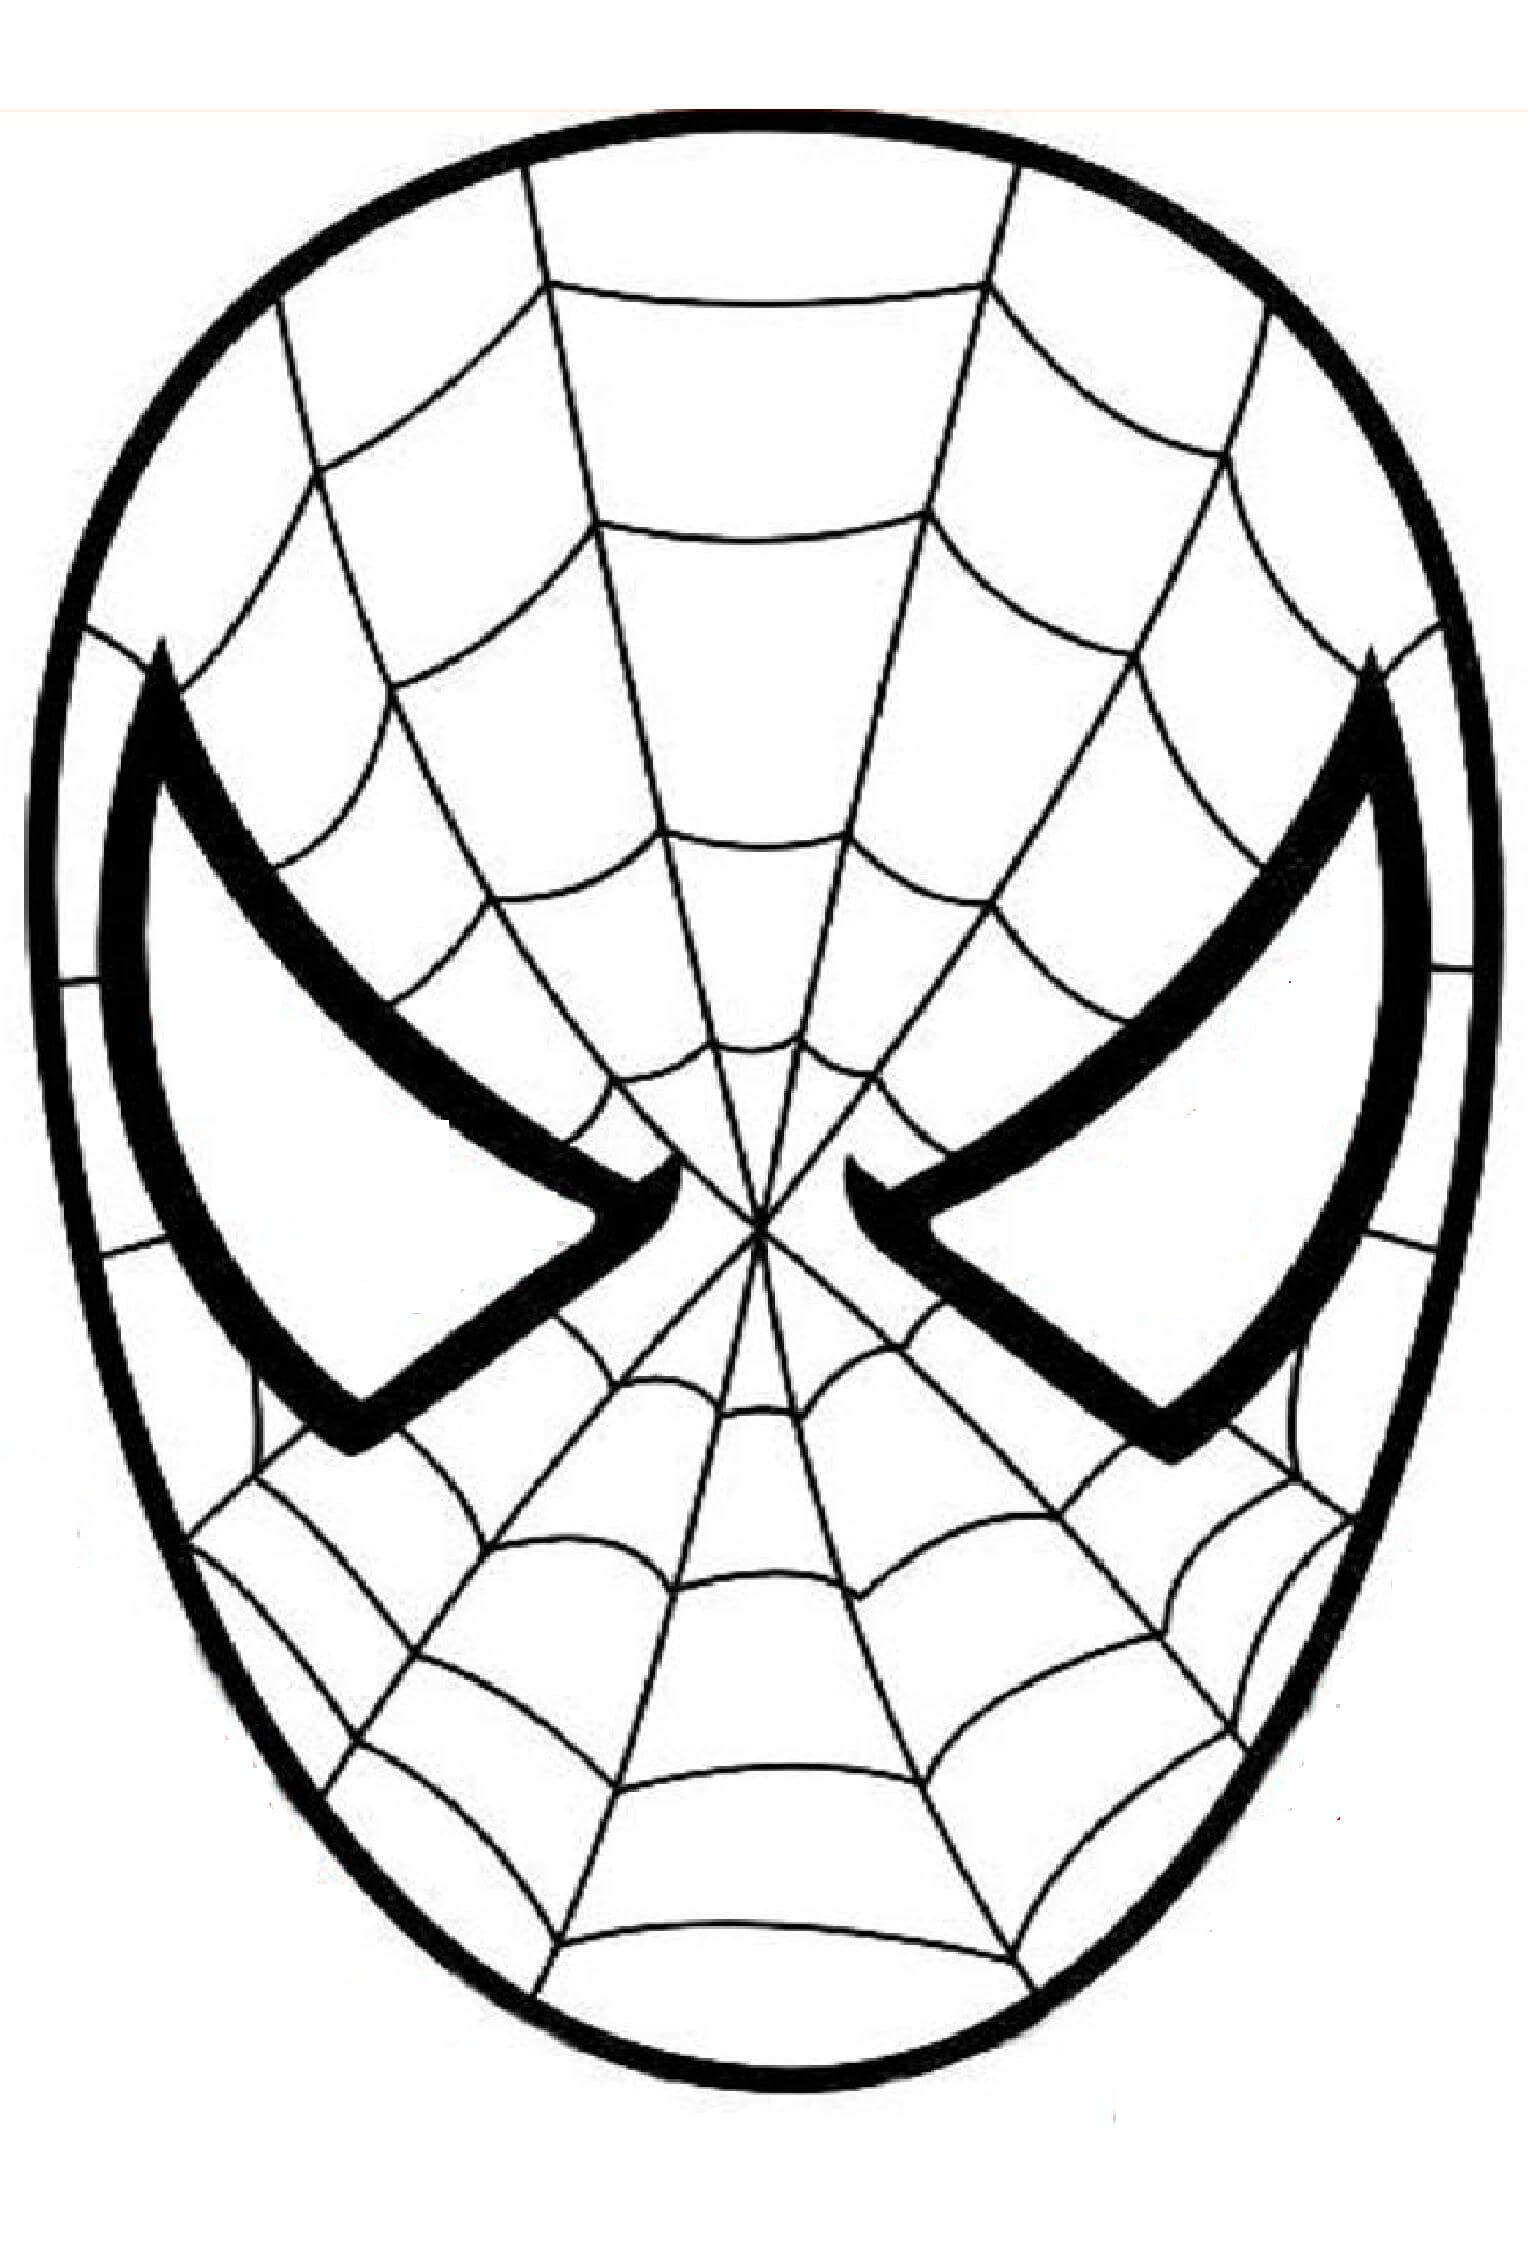 Le Masque de Spiderman coloring page